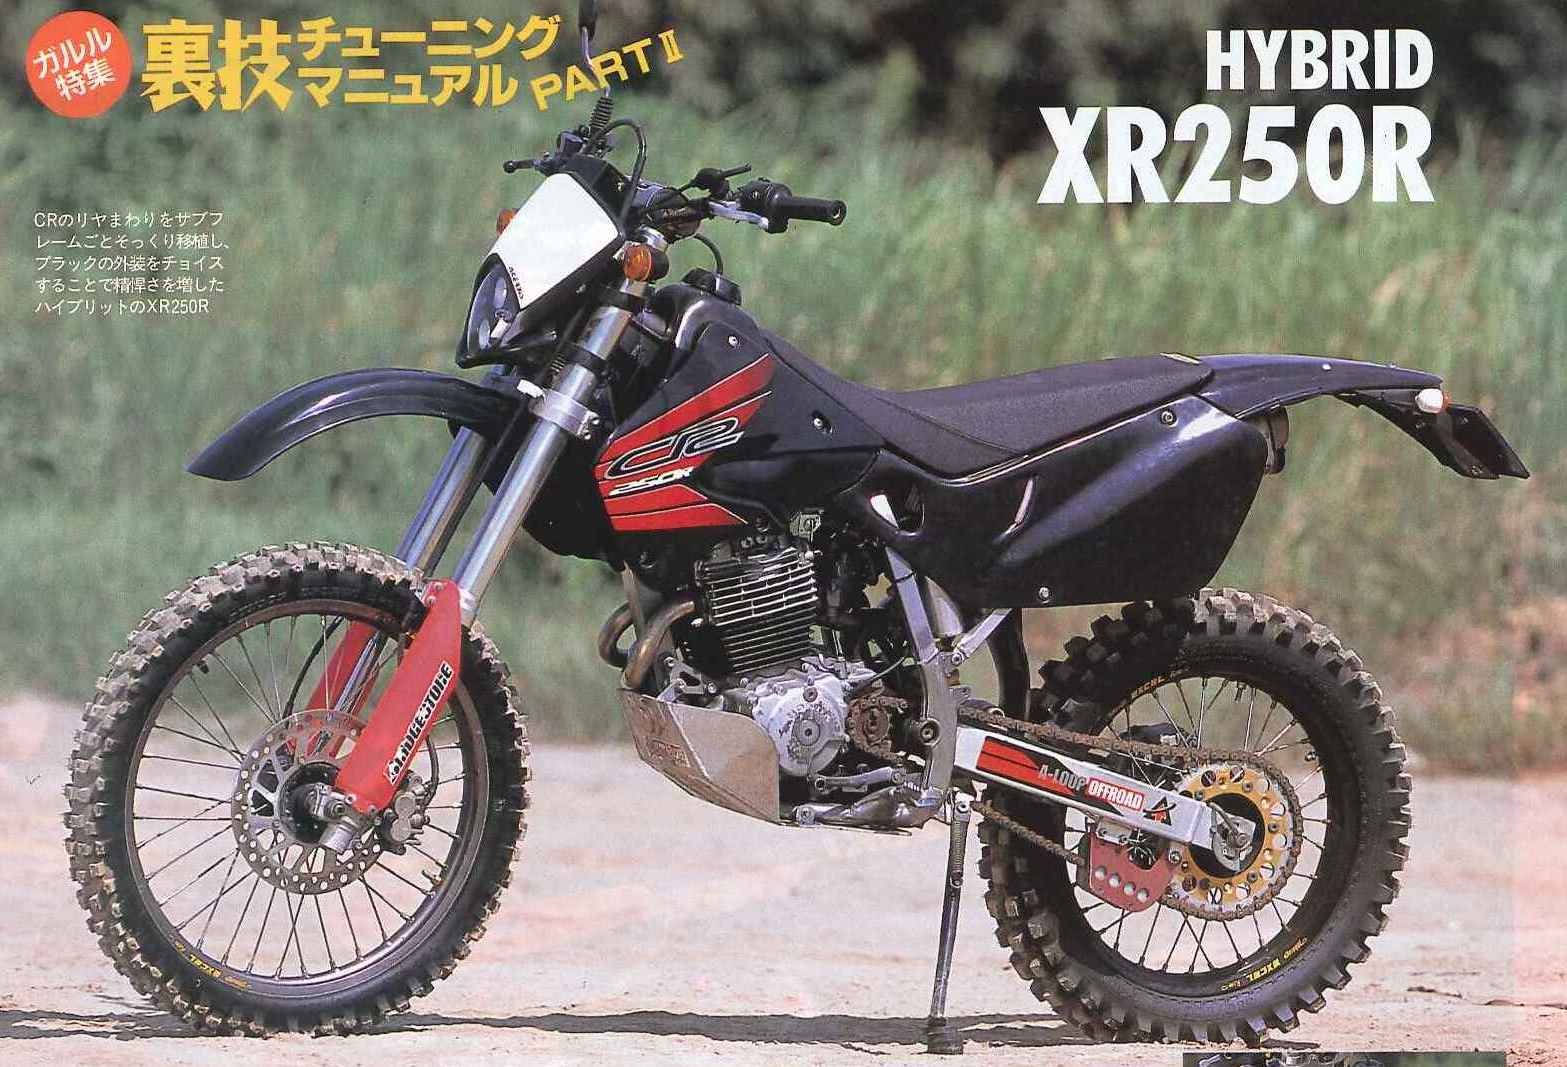 GARAGE HYBRID XR250R ME06